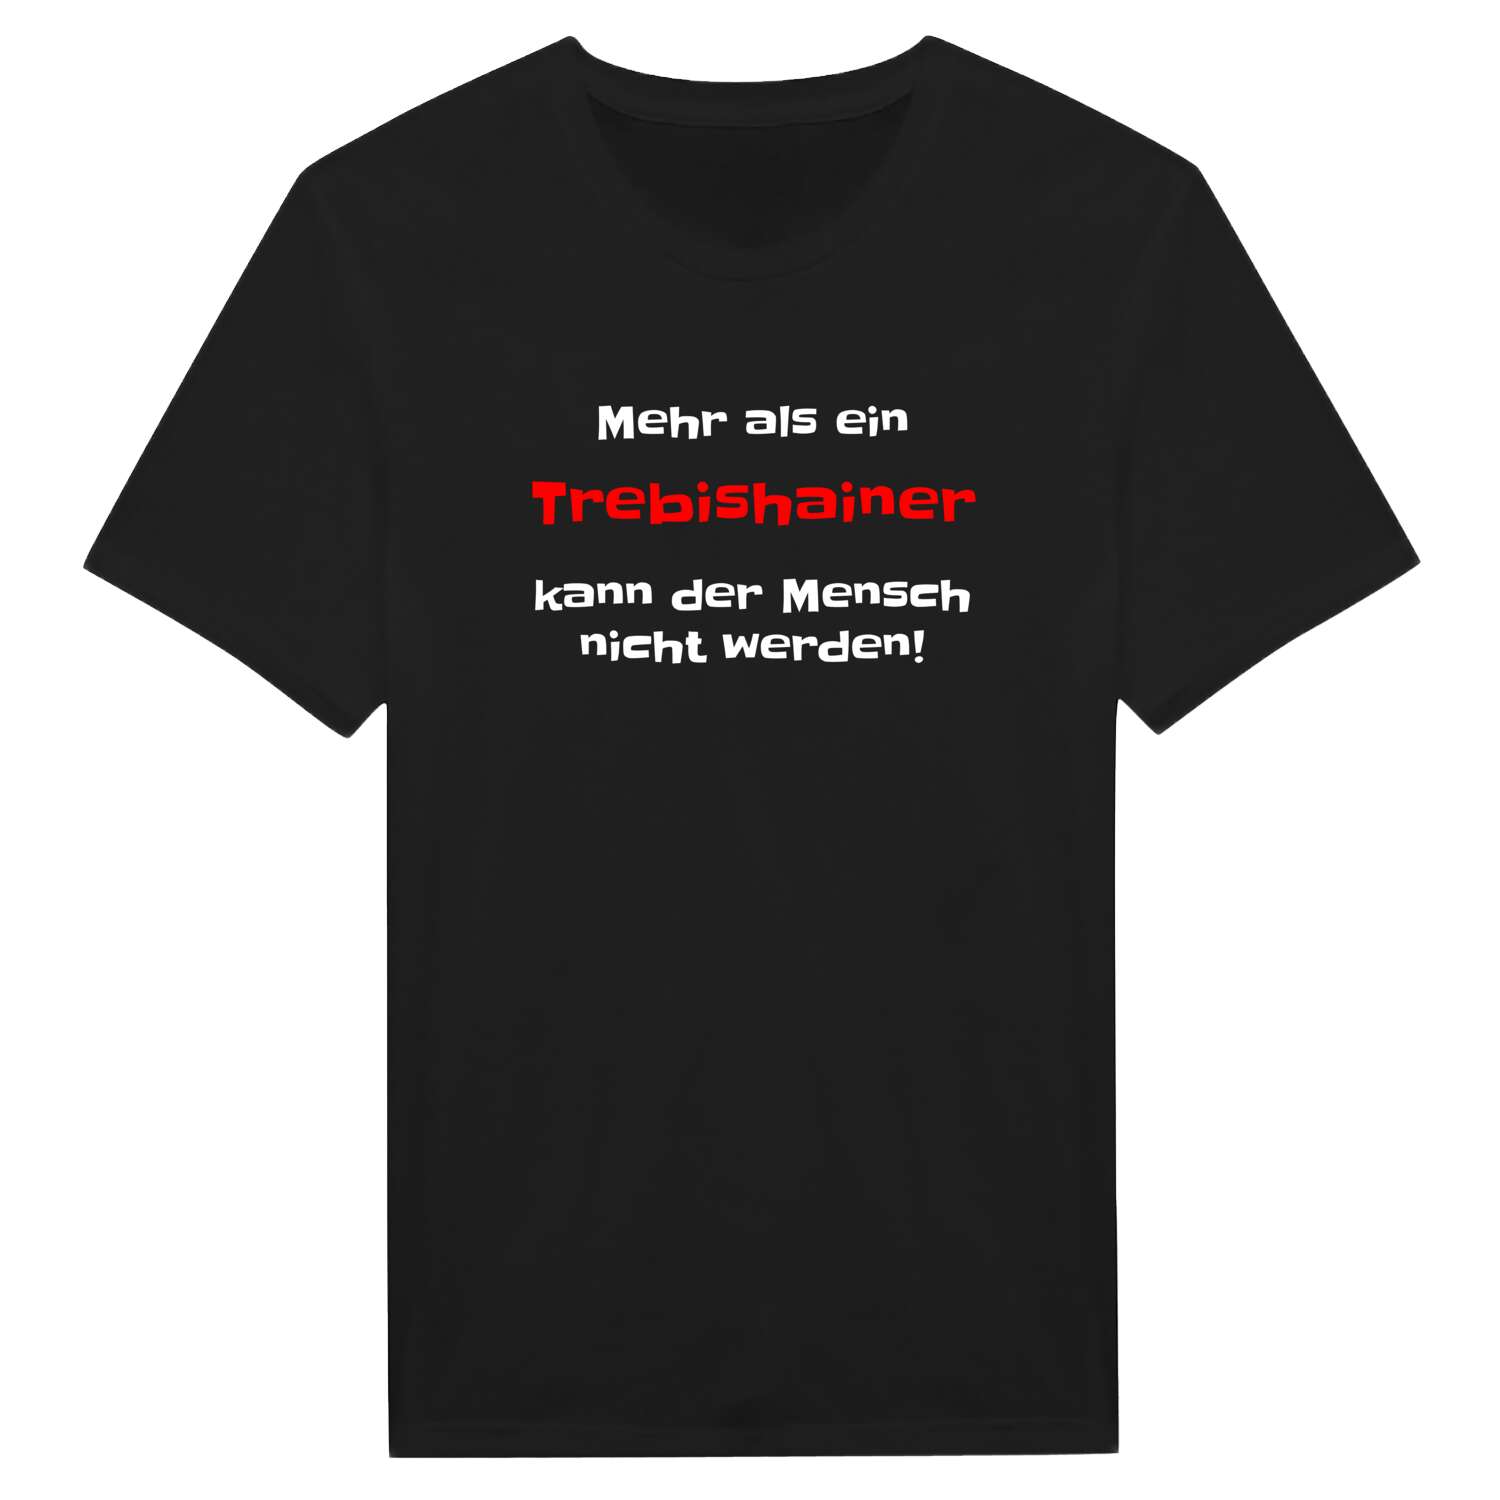 Trebishain T-Shirt »Mehr als ein«